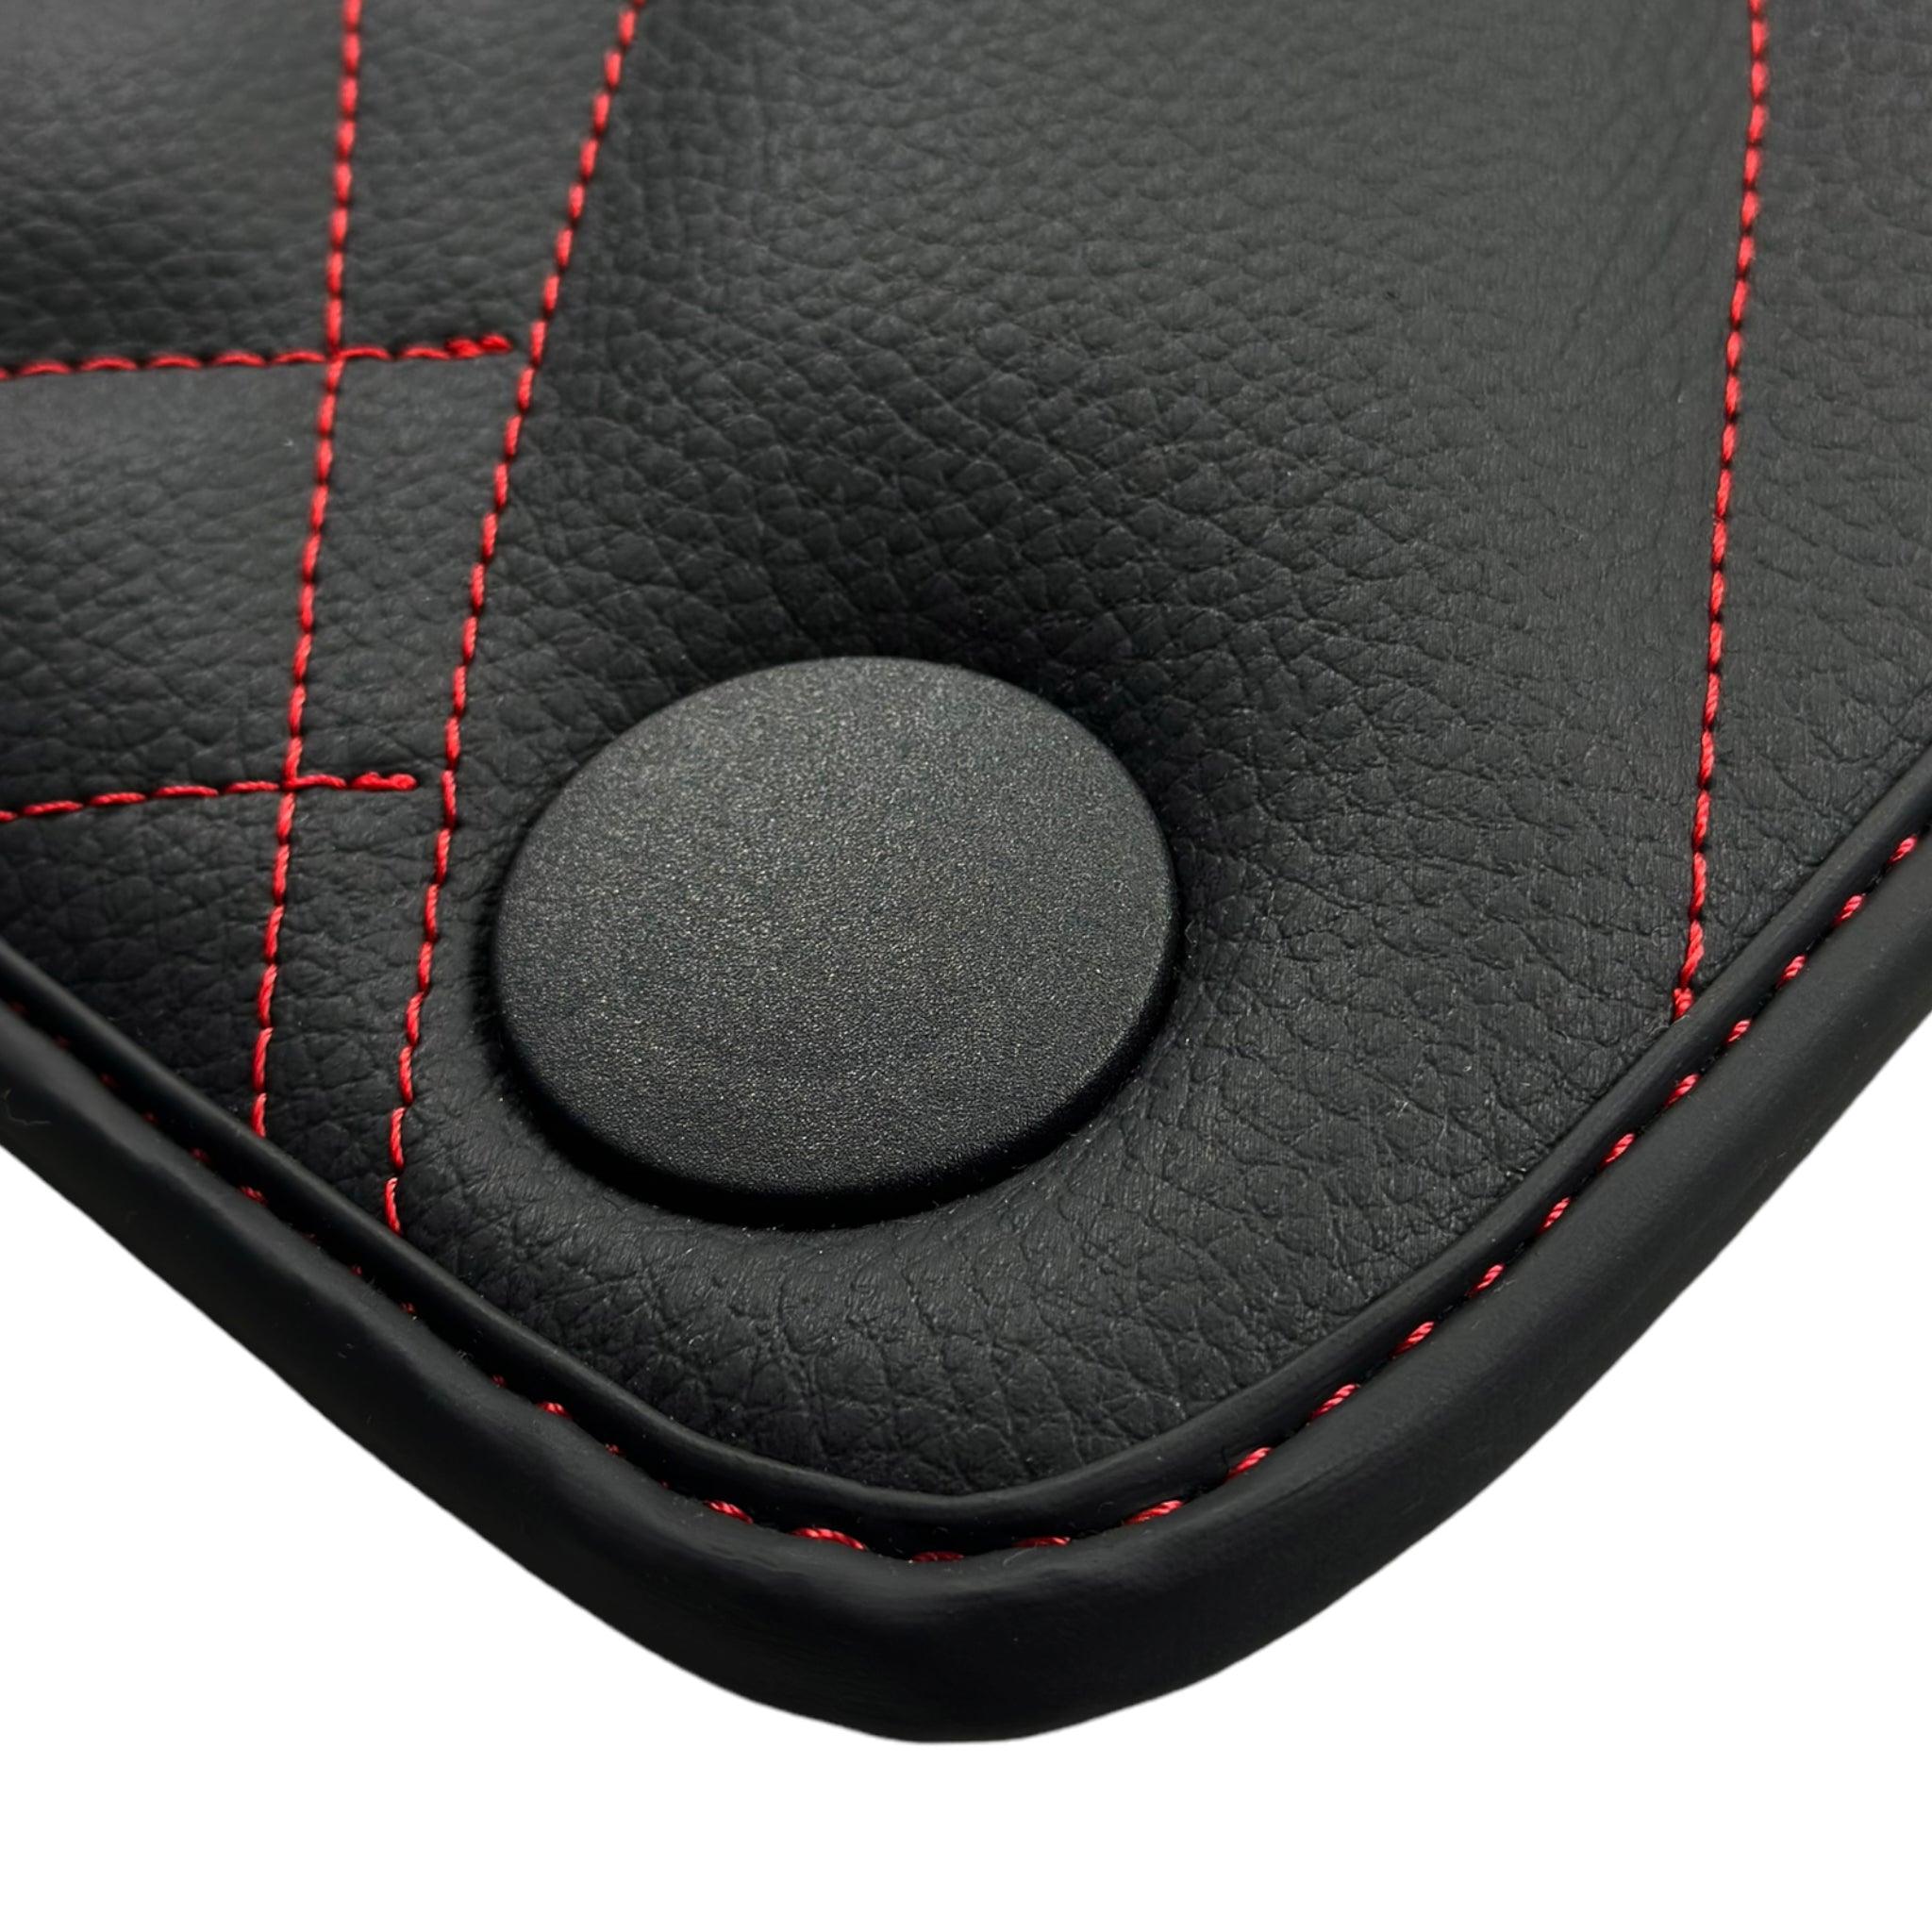 Black Leather Floor Mats For Mercedes Benz S-Class W221 (2005-2013) Short Wheelbase